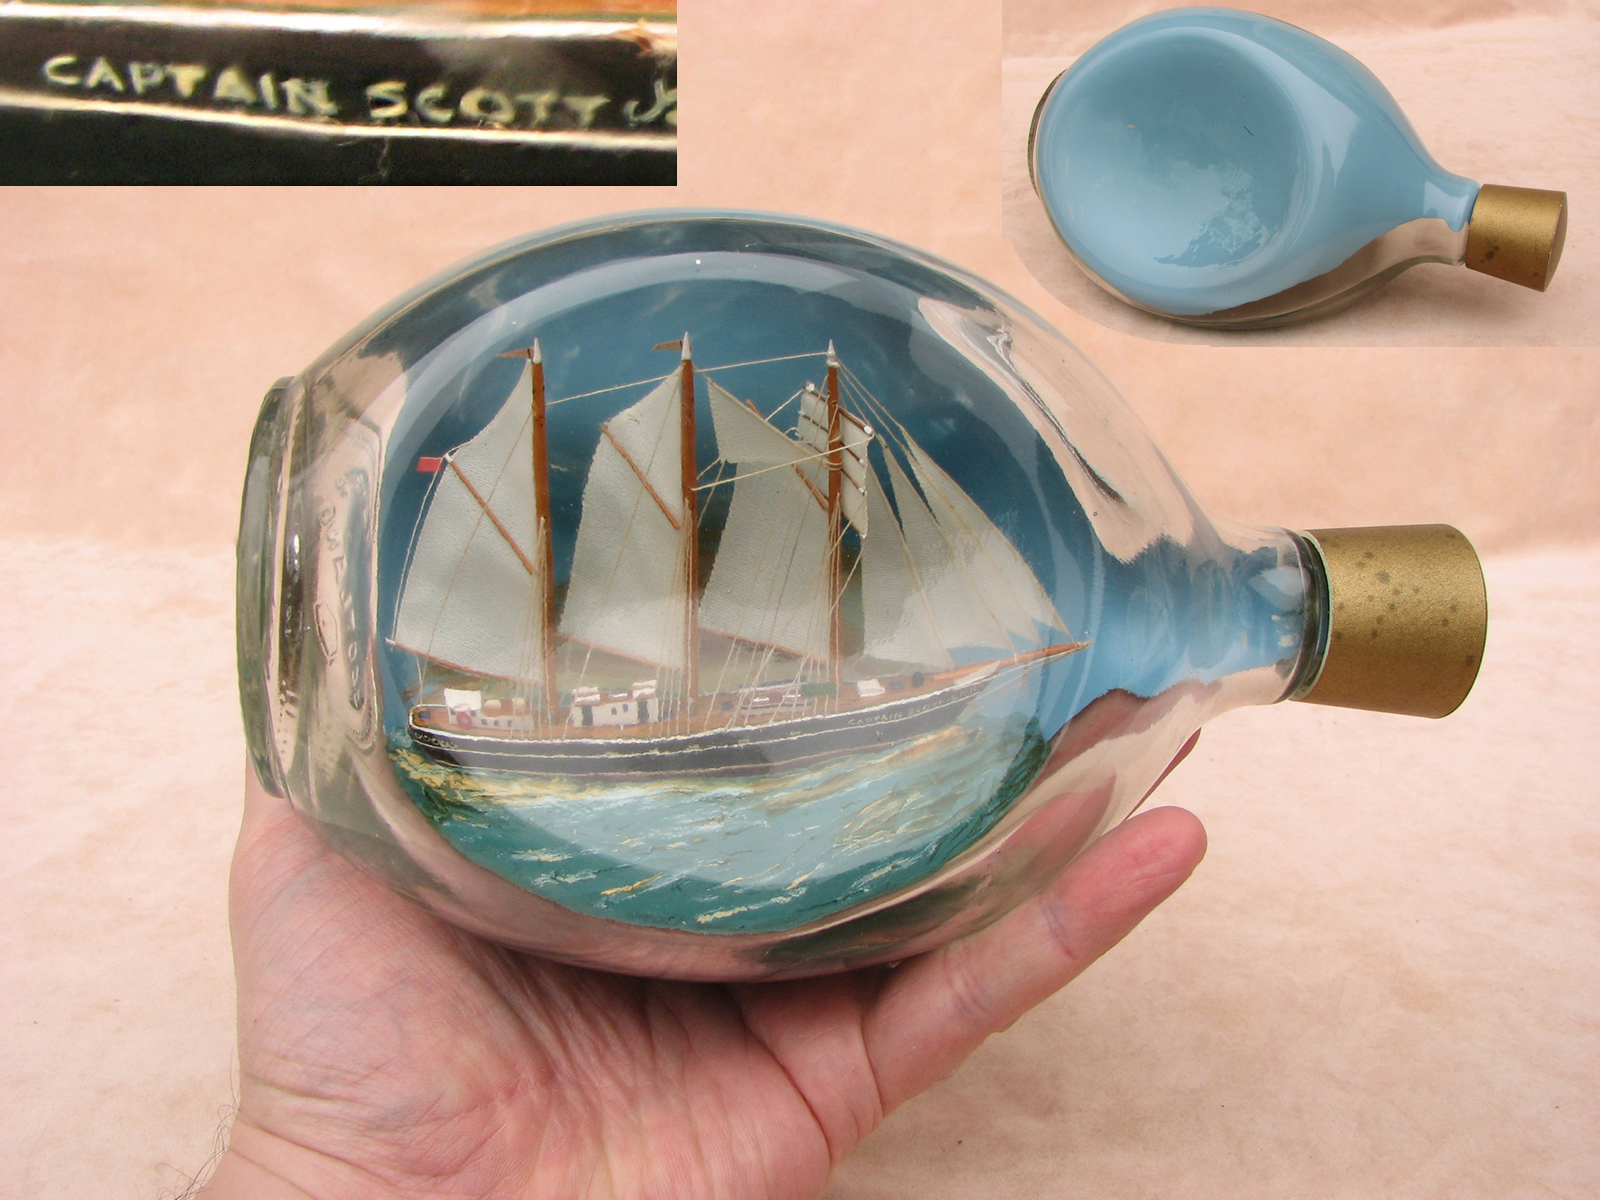 Model of the Captain Scott adventure schooner in a 1970's Haig whisky bottle